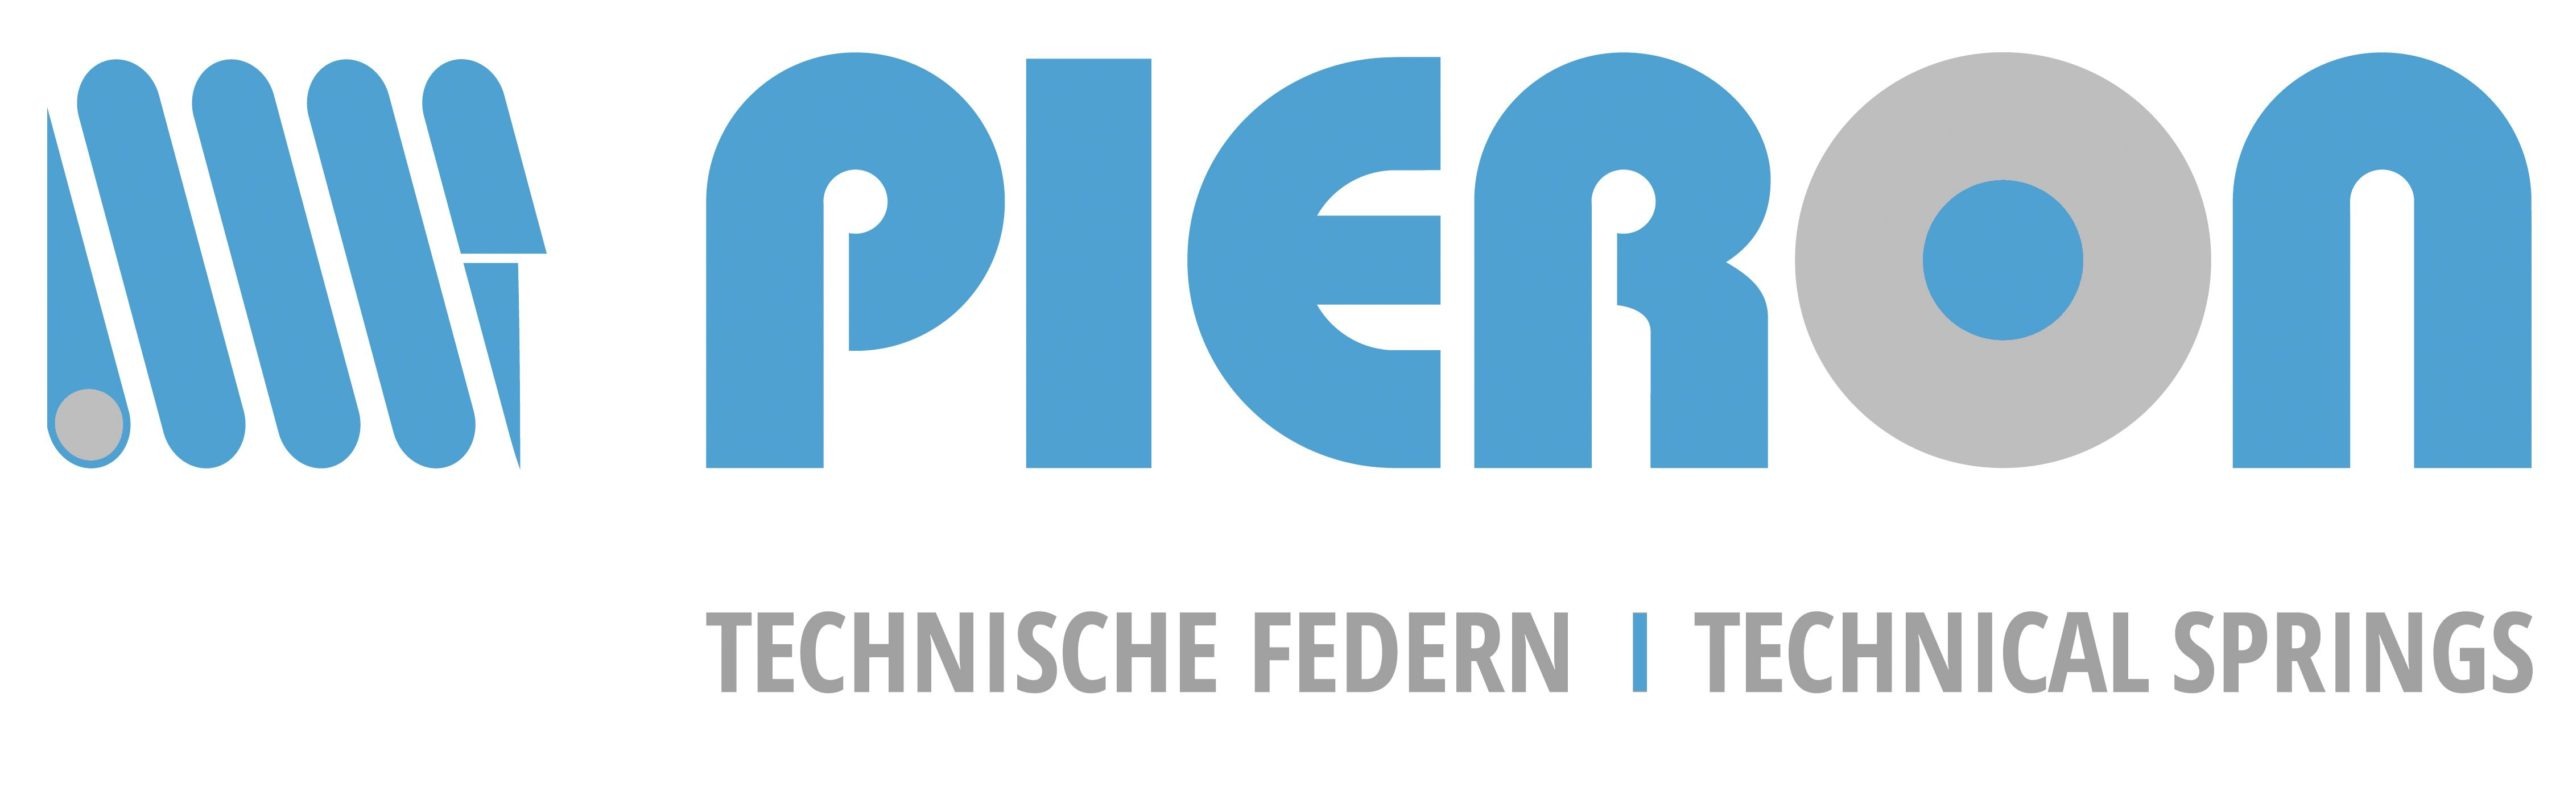 Pieron-Logo_cyan-magenta